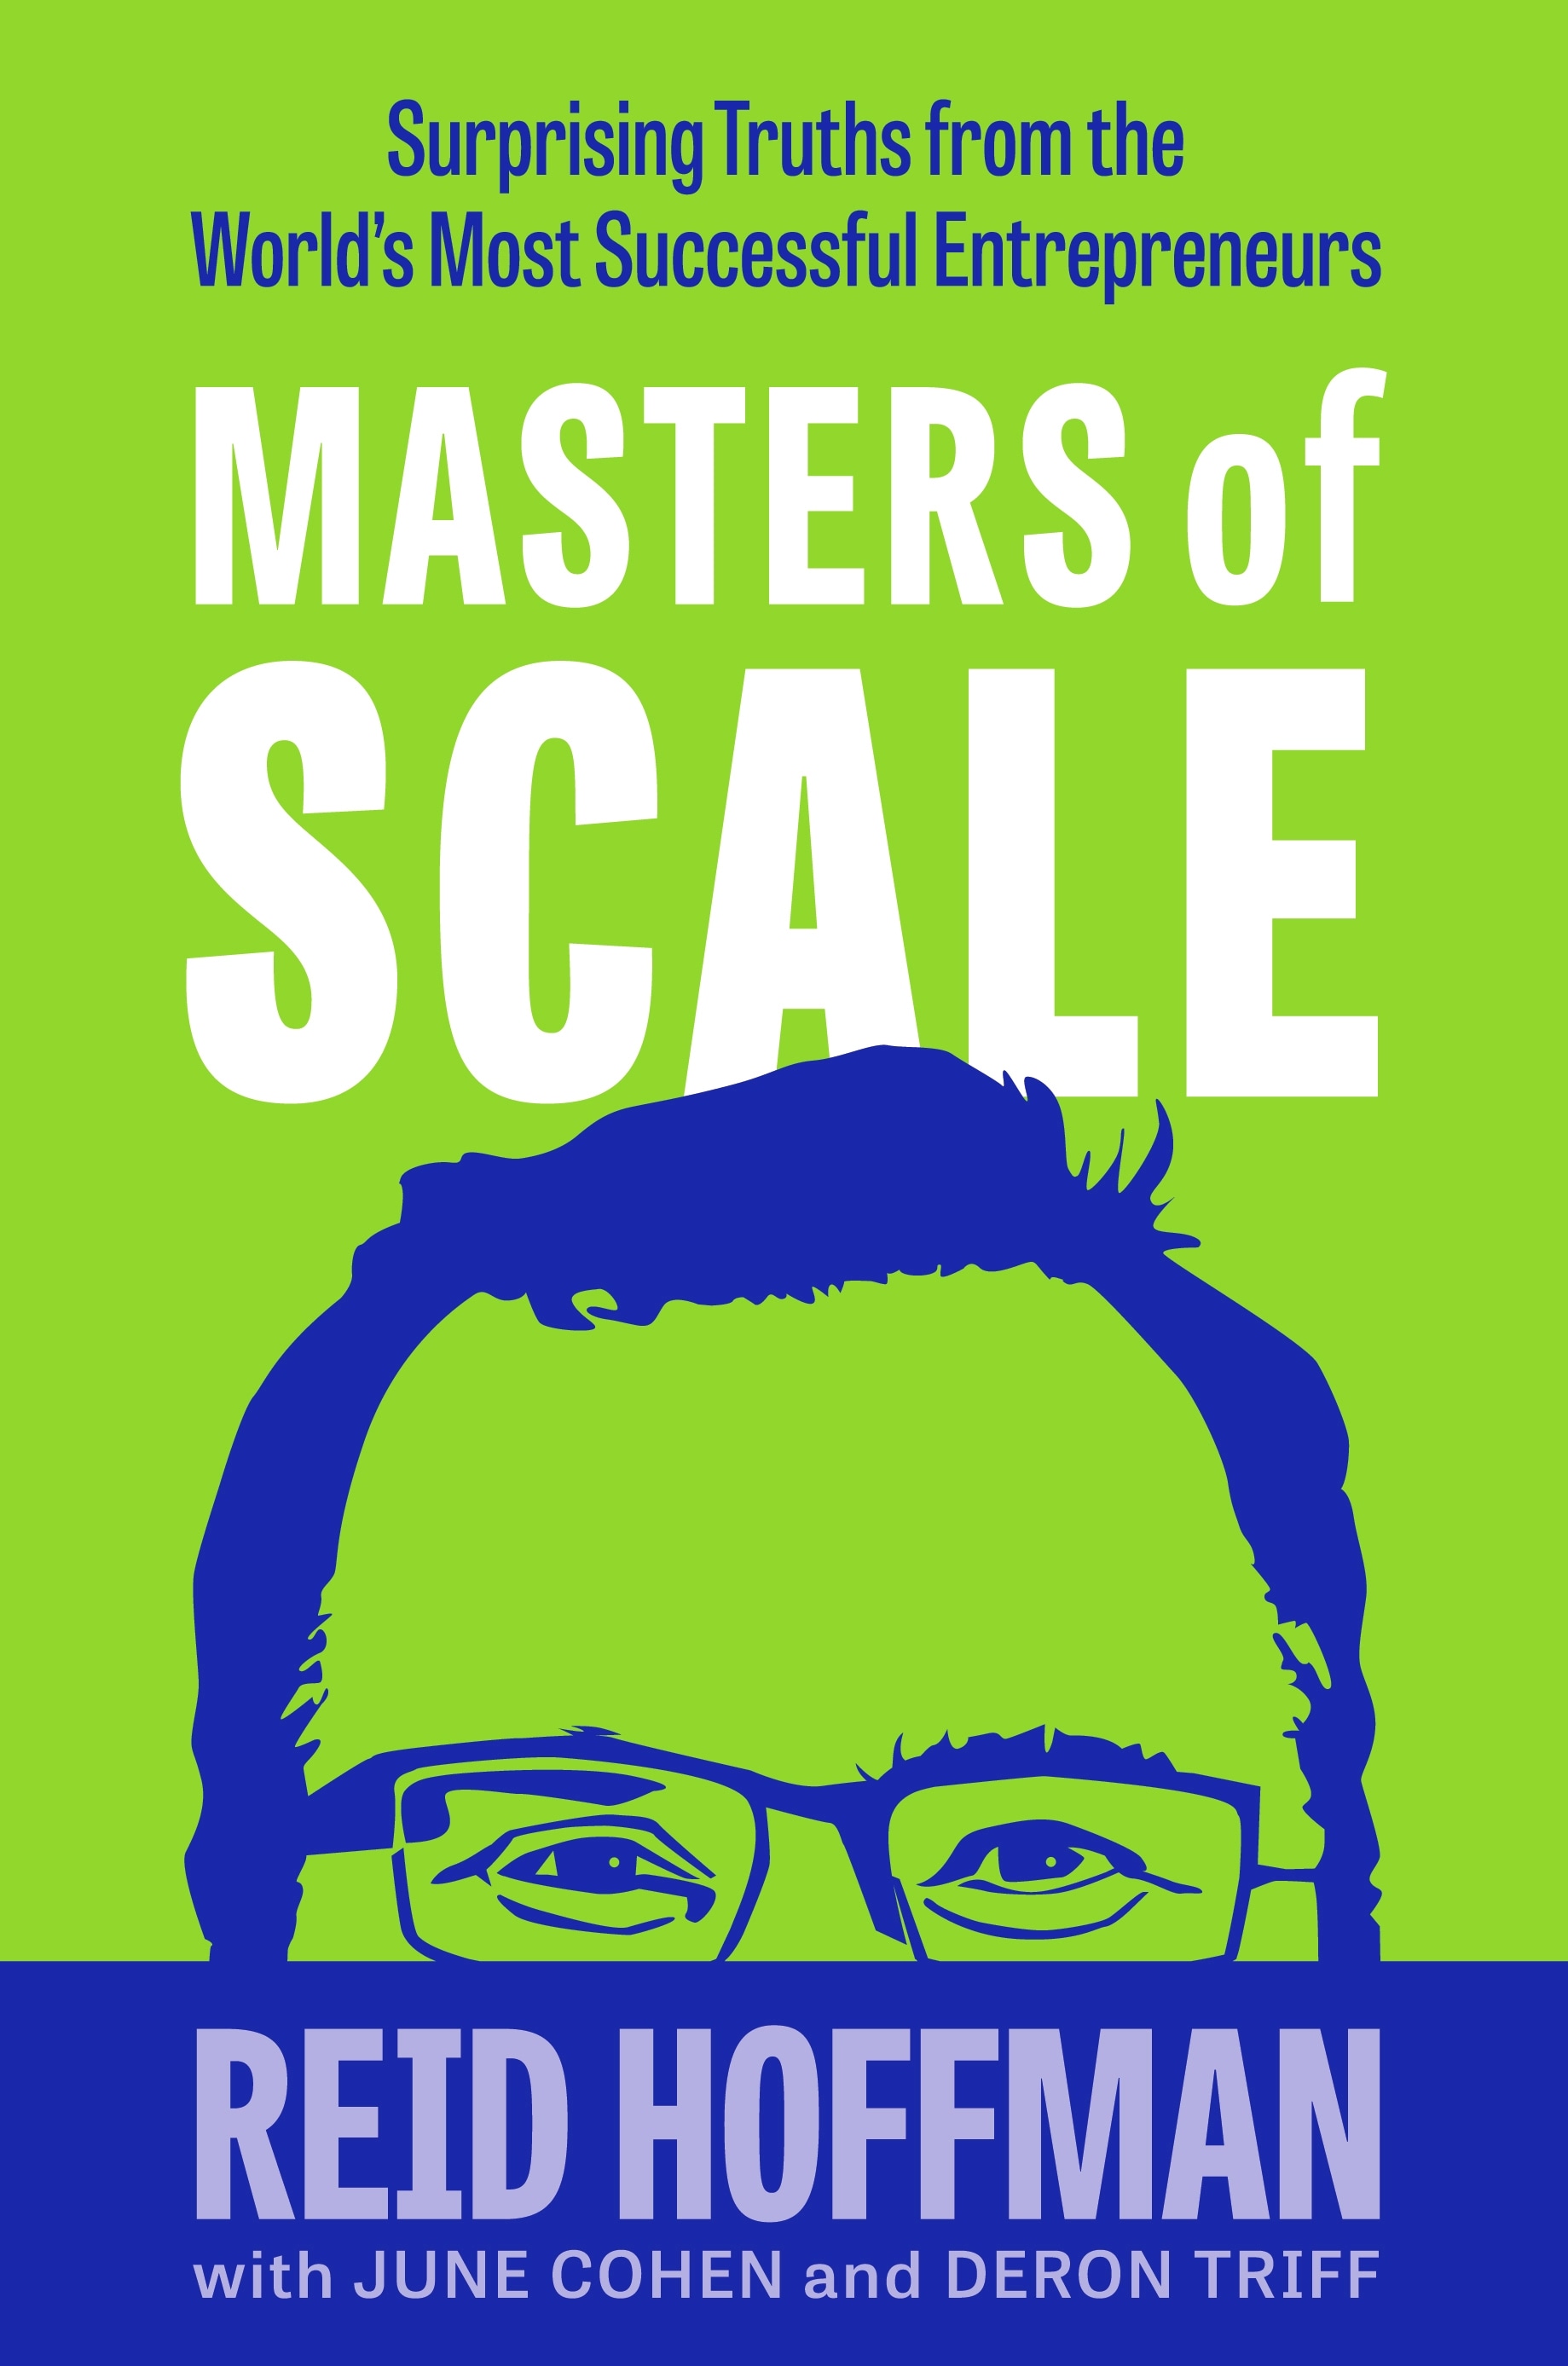 Book “Masters of Scale” by Reid Hoffman — September 9, 2021